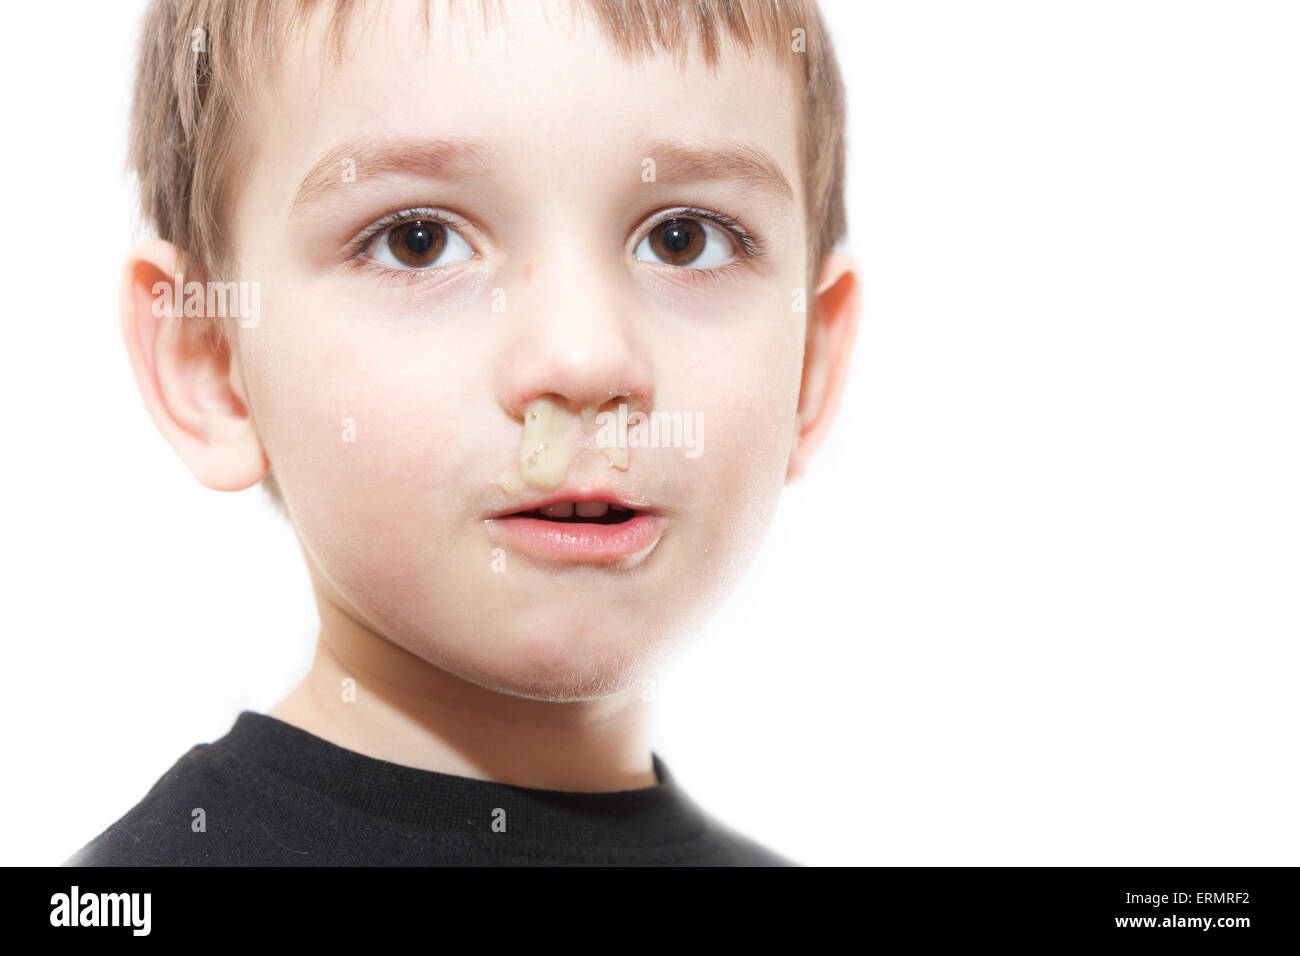 krank junge mit Grippe und grün Rhinitis an Nase - isolierte Bild Stockfoto